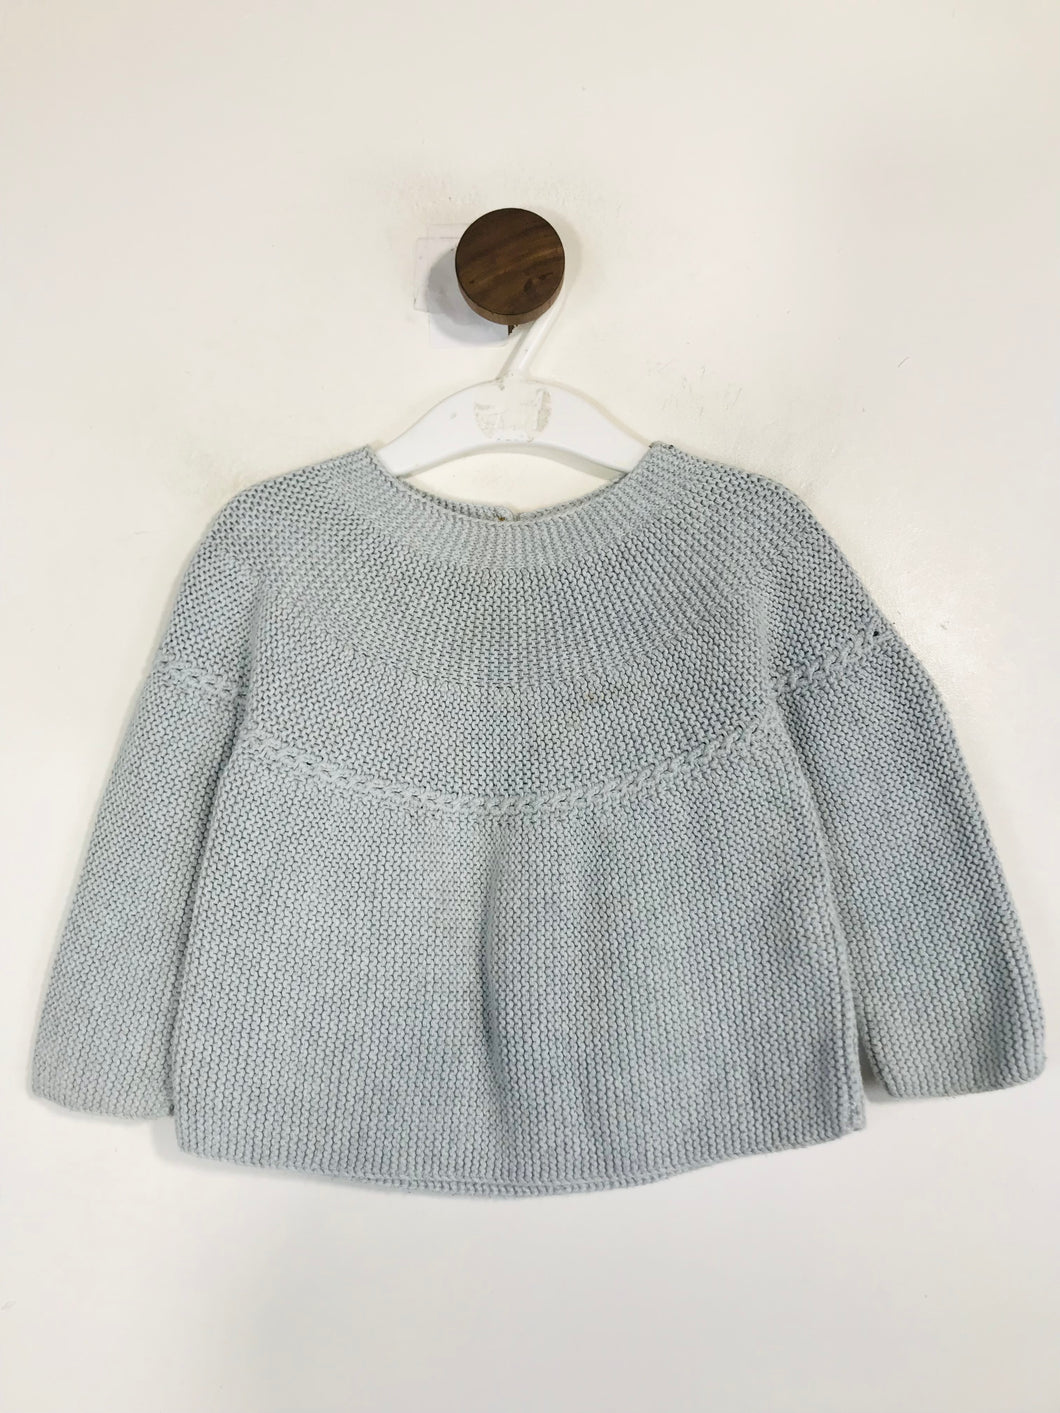 Zara Kid's Knit Jumper | 12-18 months | Blue